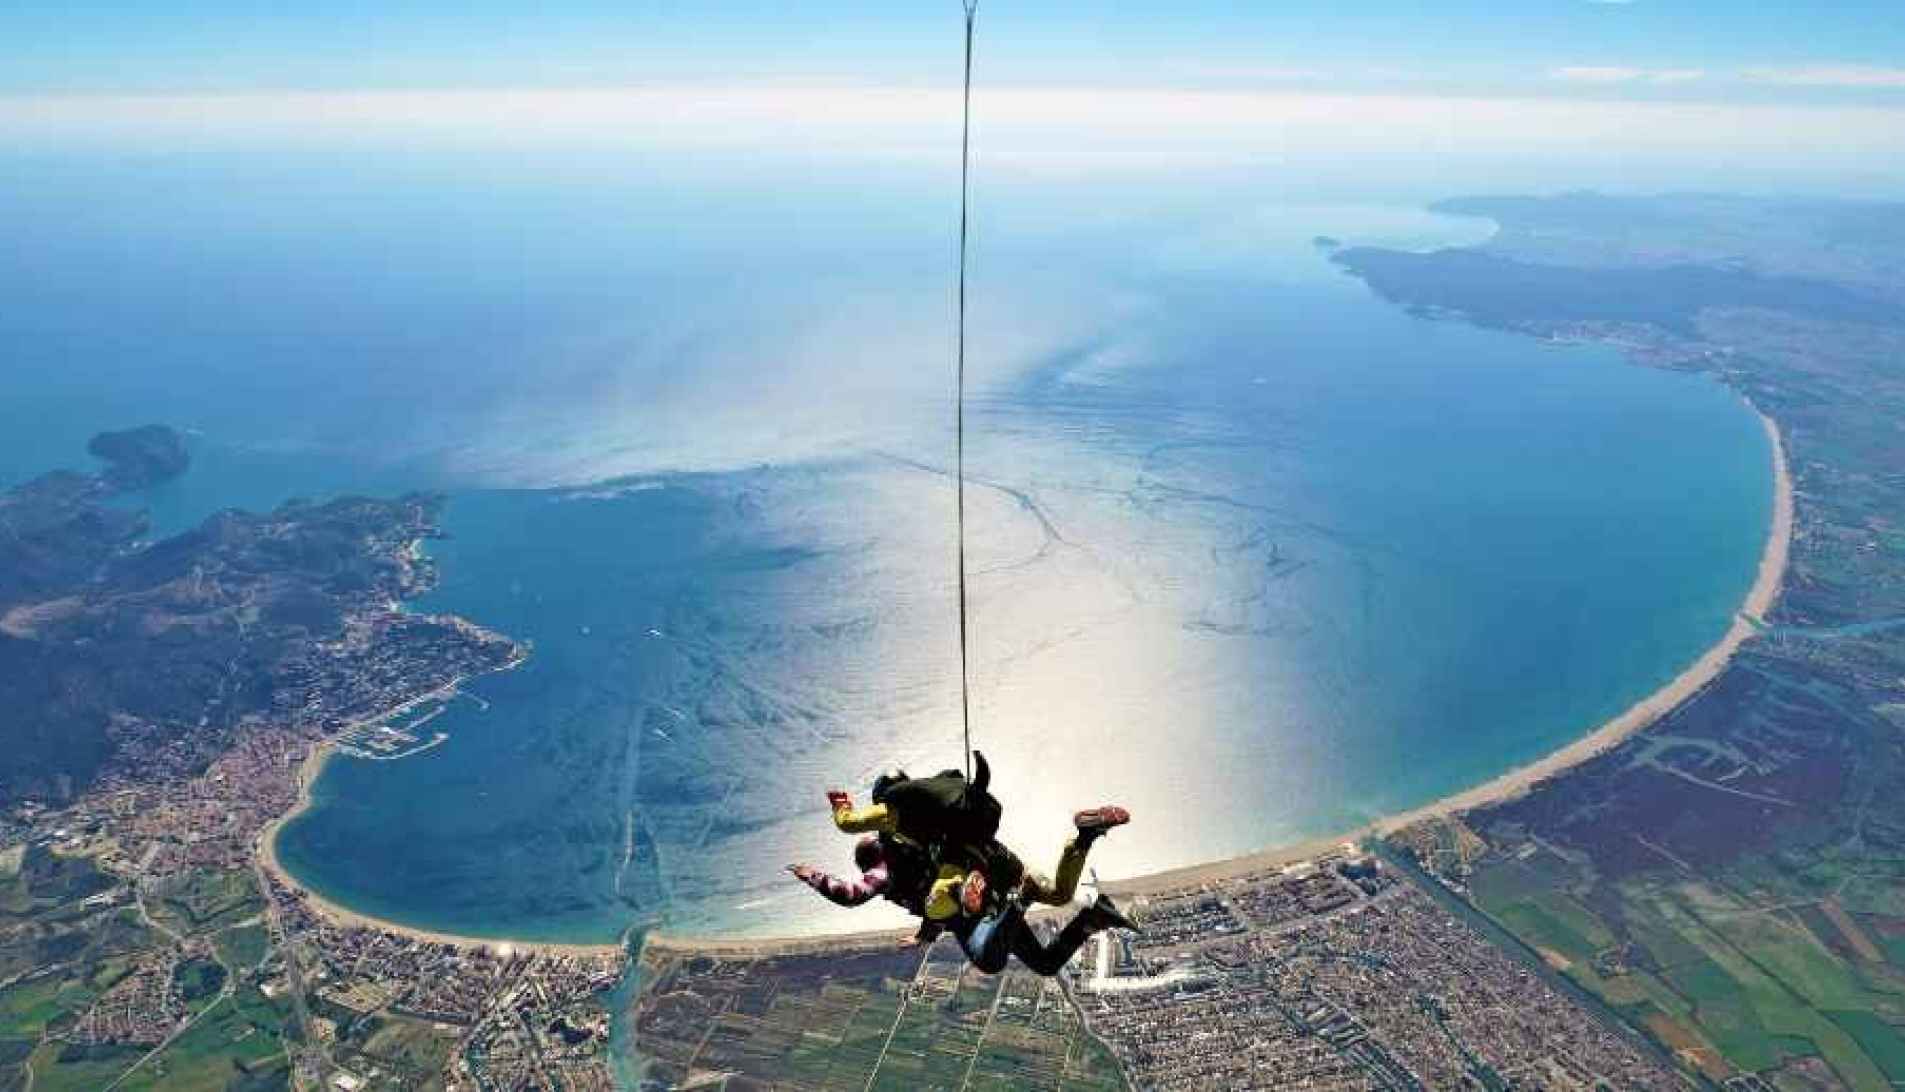  Estos son los mejores lugares de España para tirarse en paracaídas